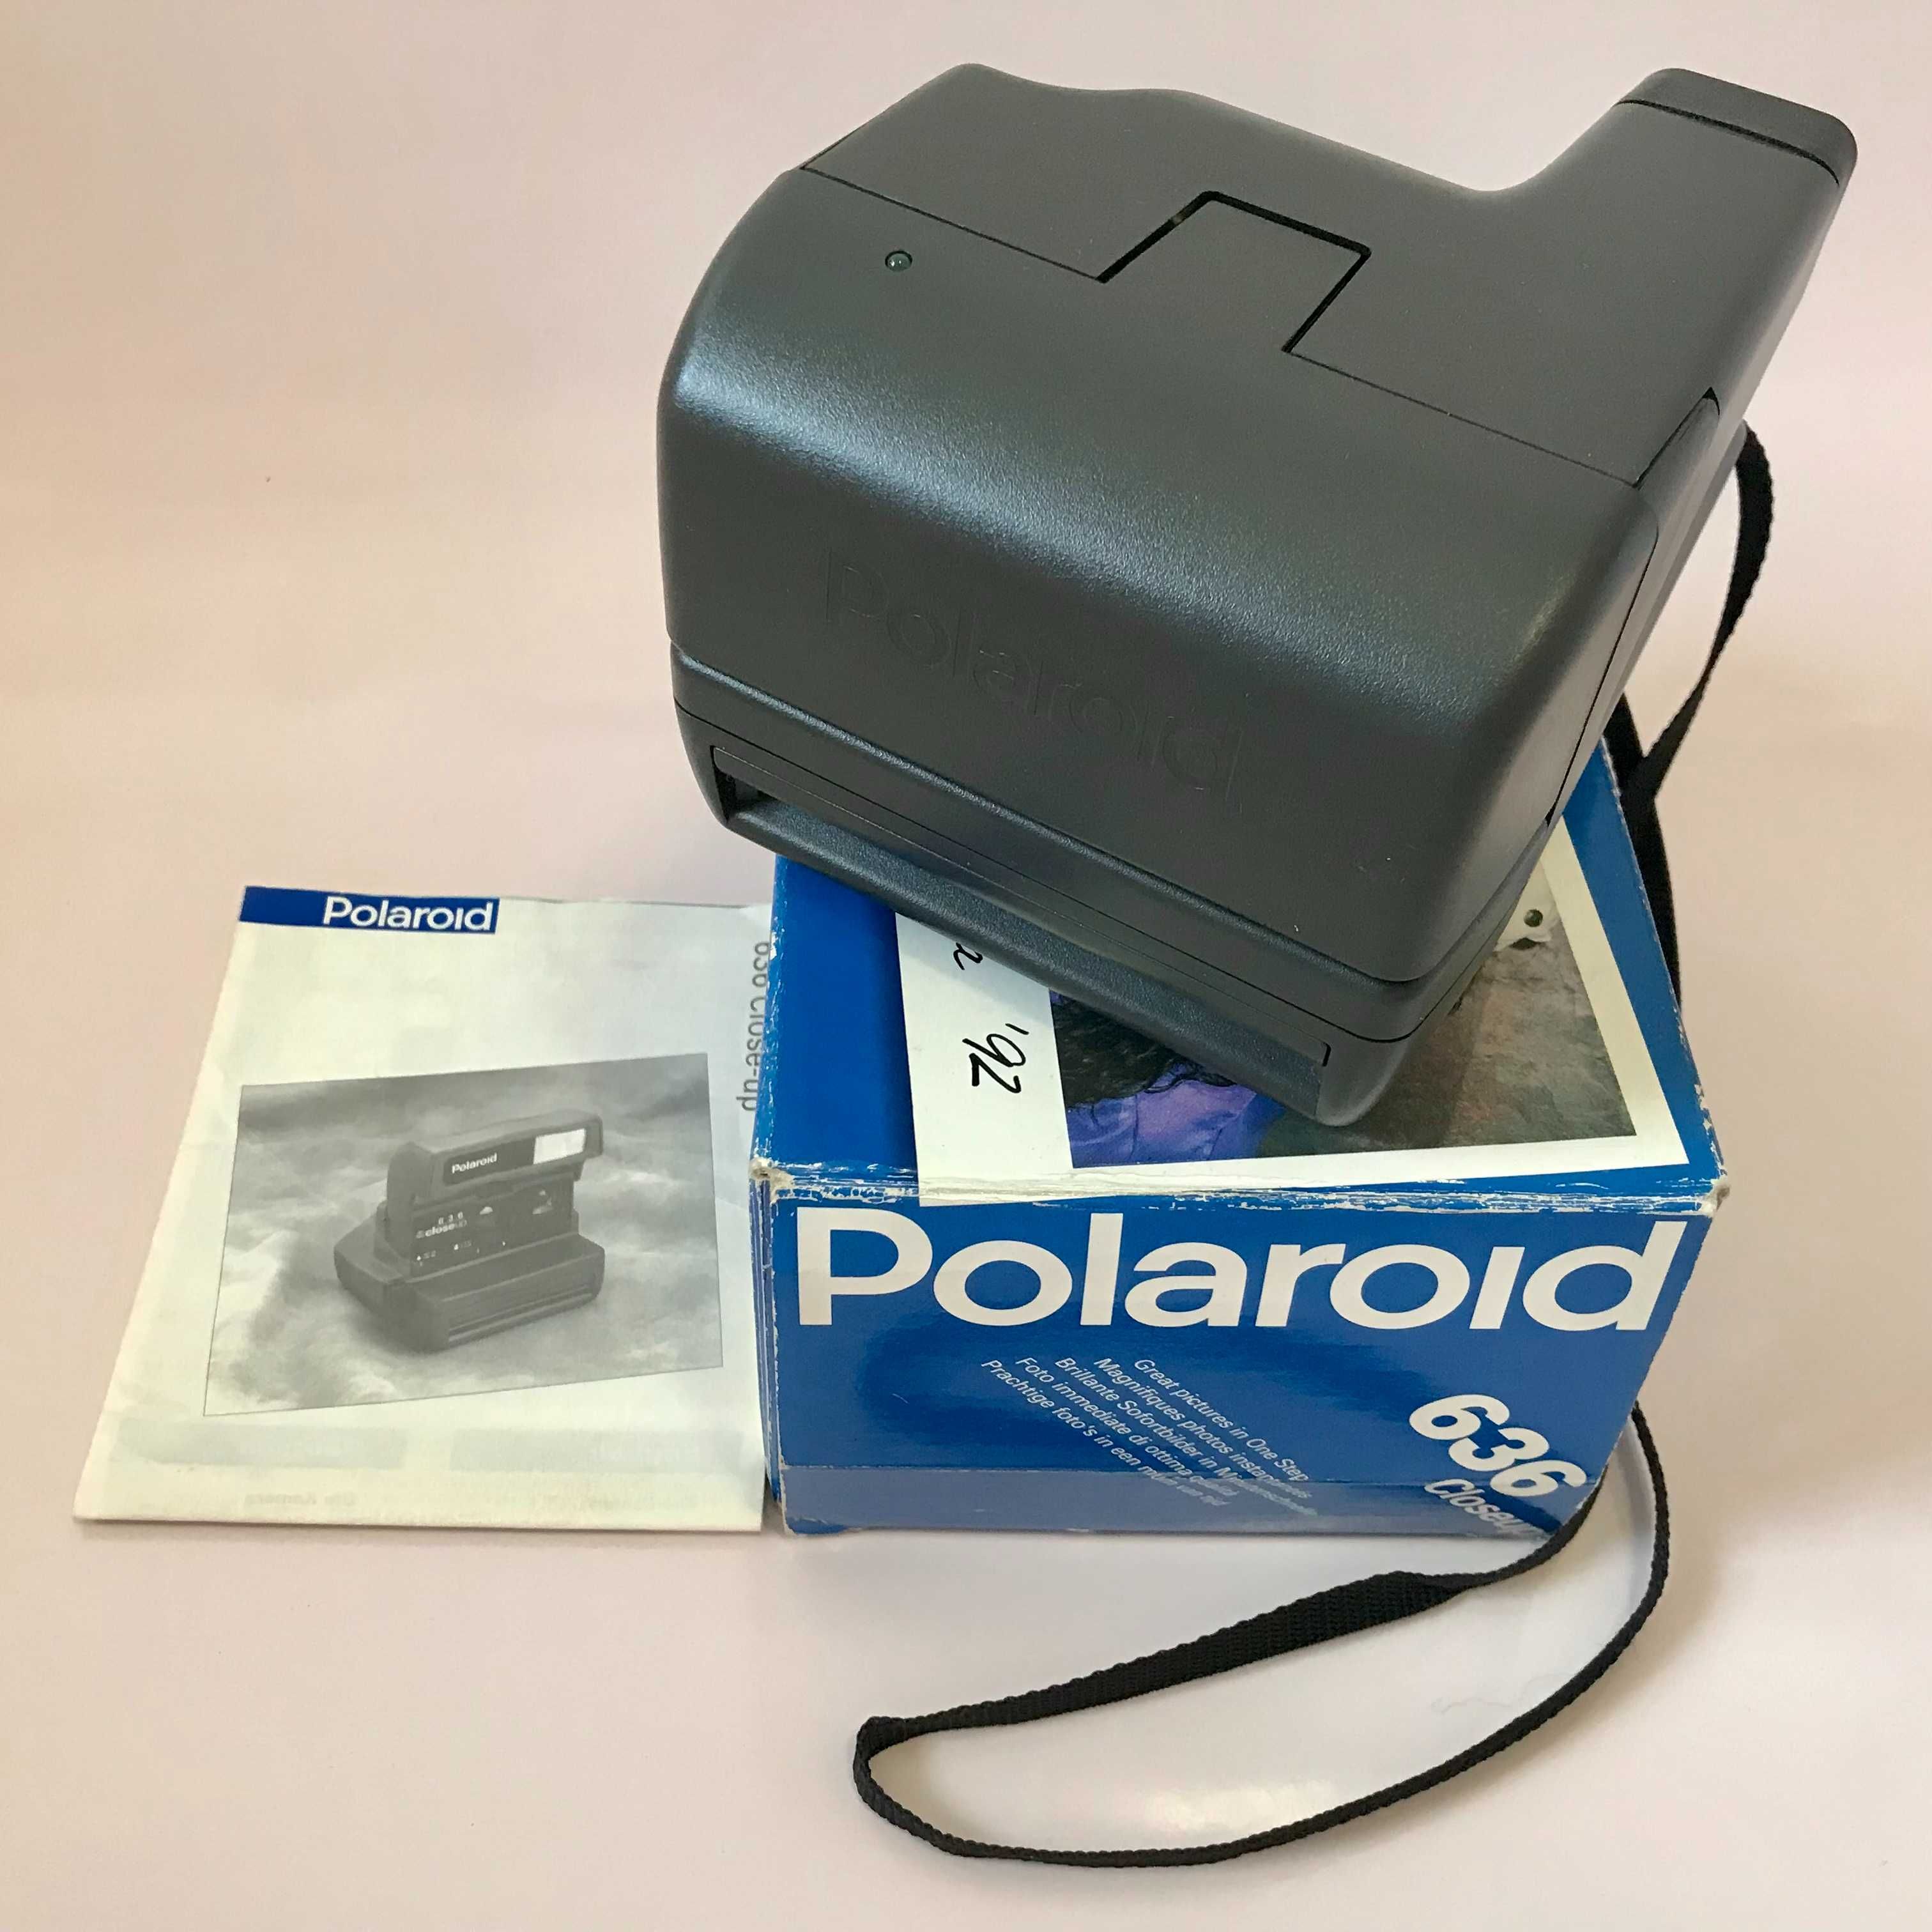 Polaroid 636 Close Up - kompletny, sprawny i drogi w eksploatacji !!!